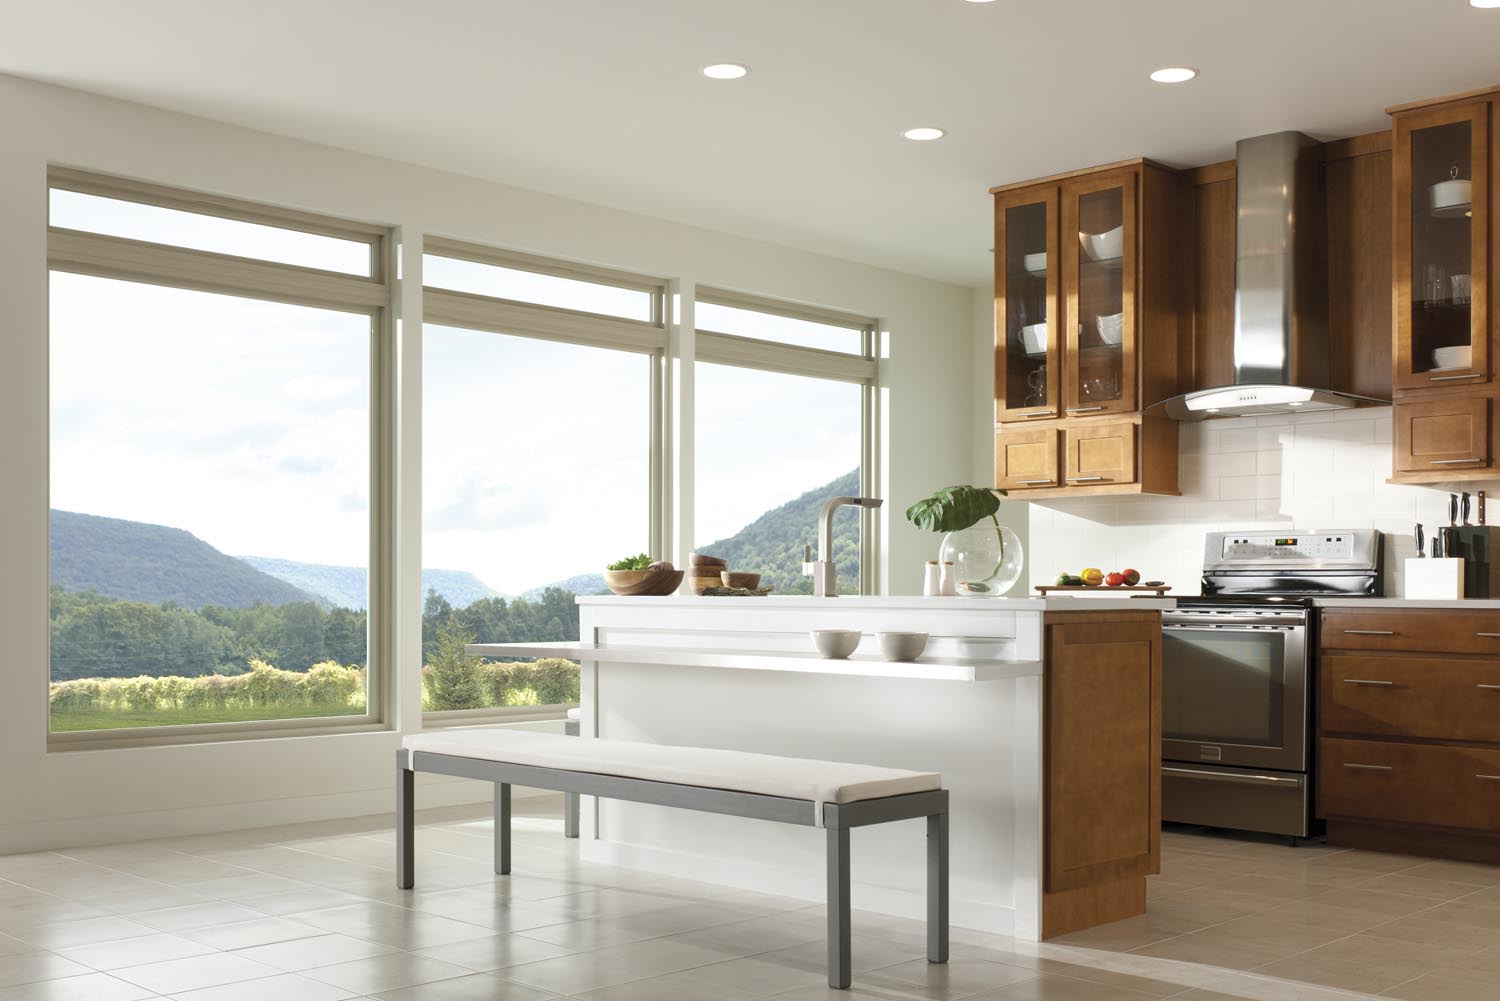 Large window kitchen design